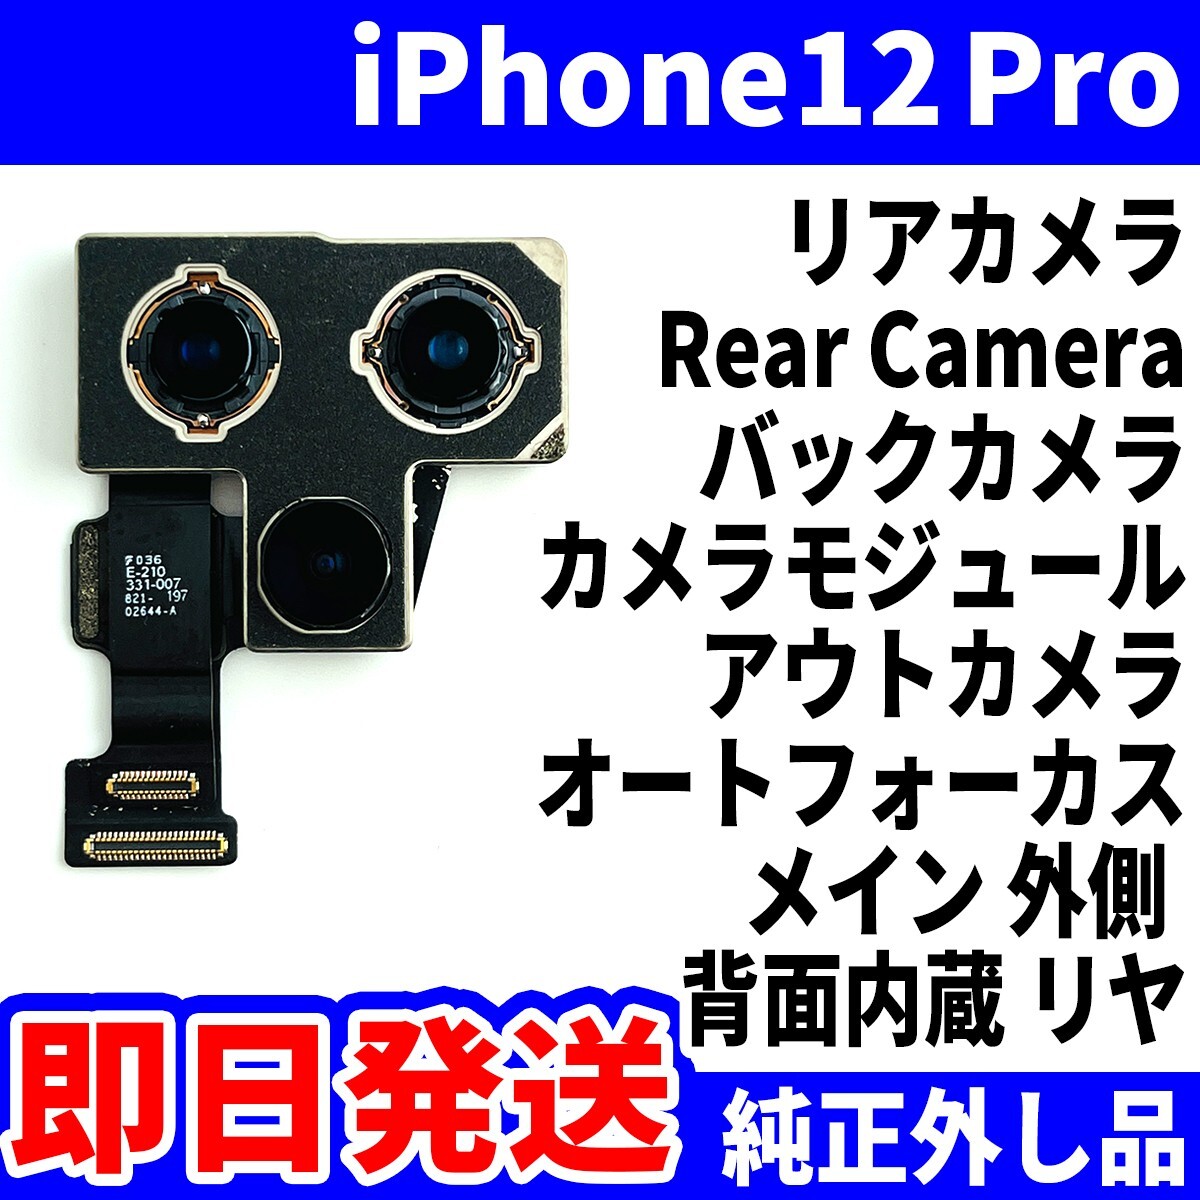 即日発送! 純正外し品! iPhone12 Pro リアカメラ 何も映らない RearCamera 背面内蔵 リヤ バックカメラ カメラ スマホ パーツ 交換 修理用